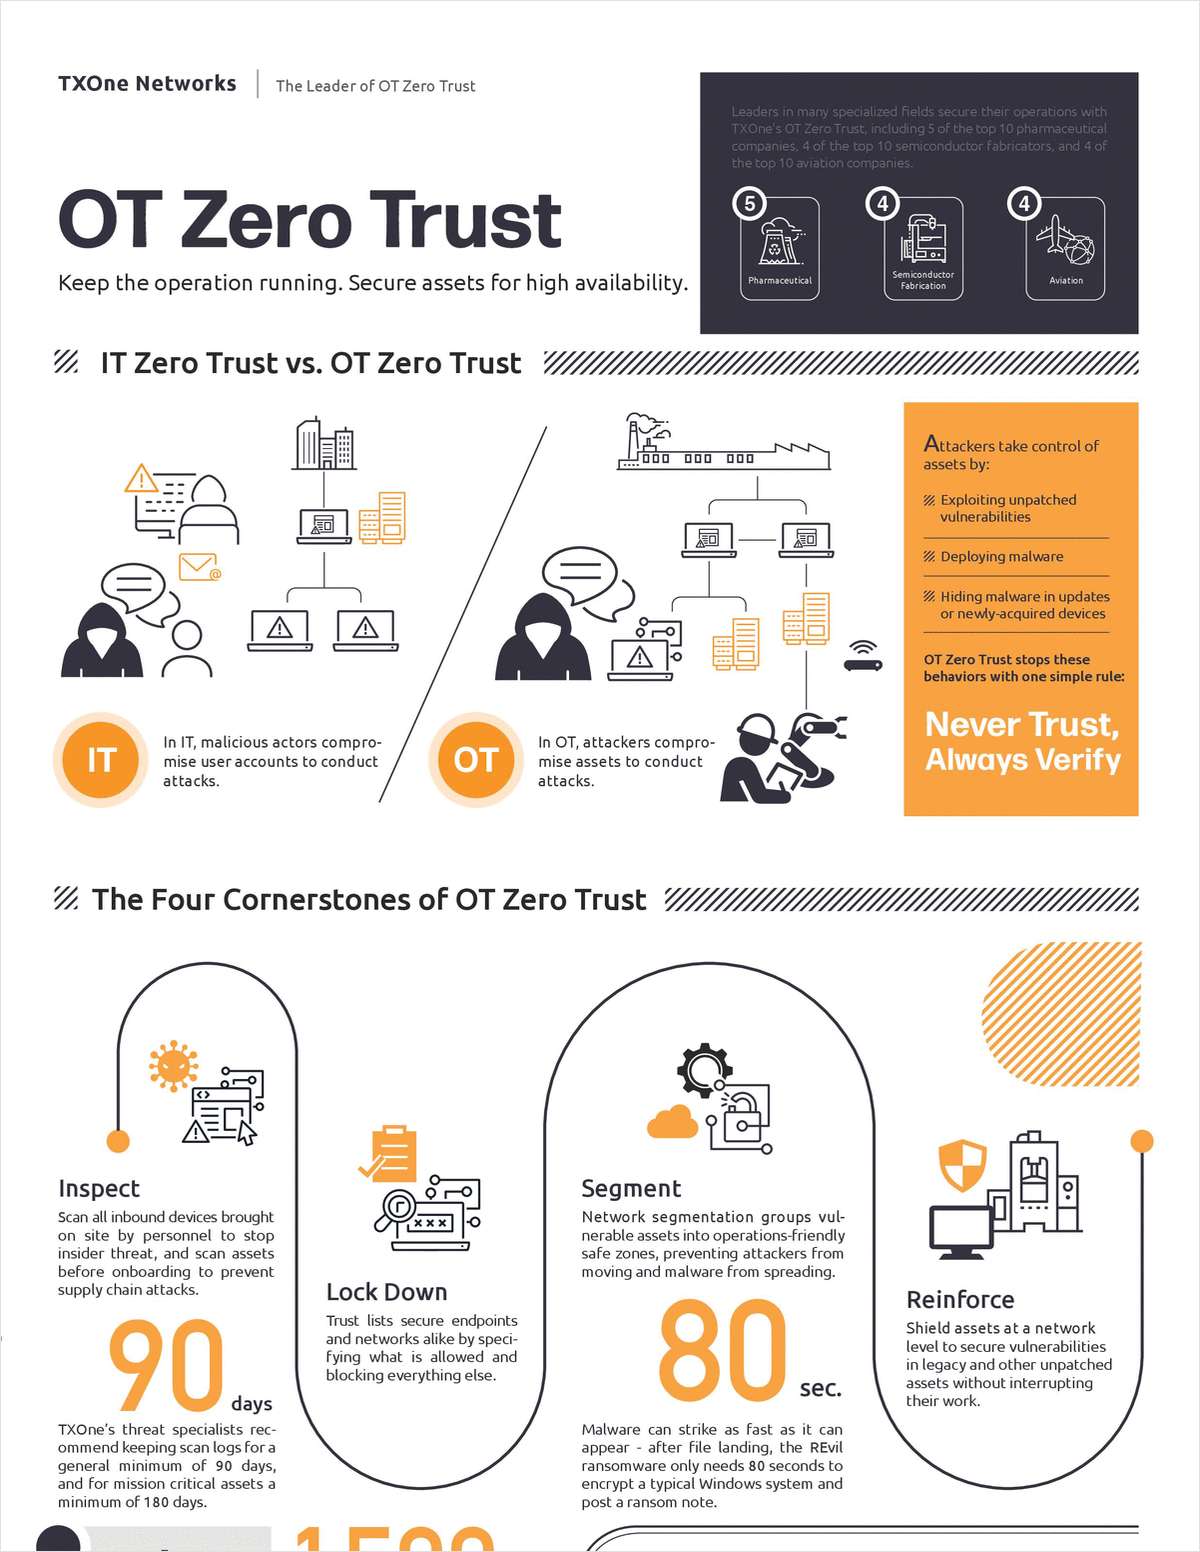 IT Zero Trust vs. OT Zero Trust: It's all about Availability